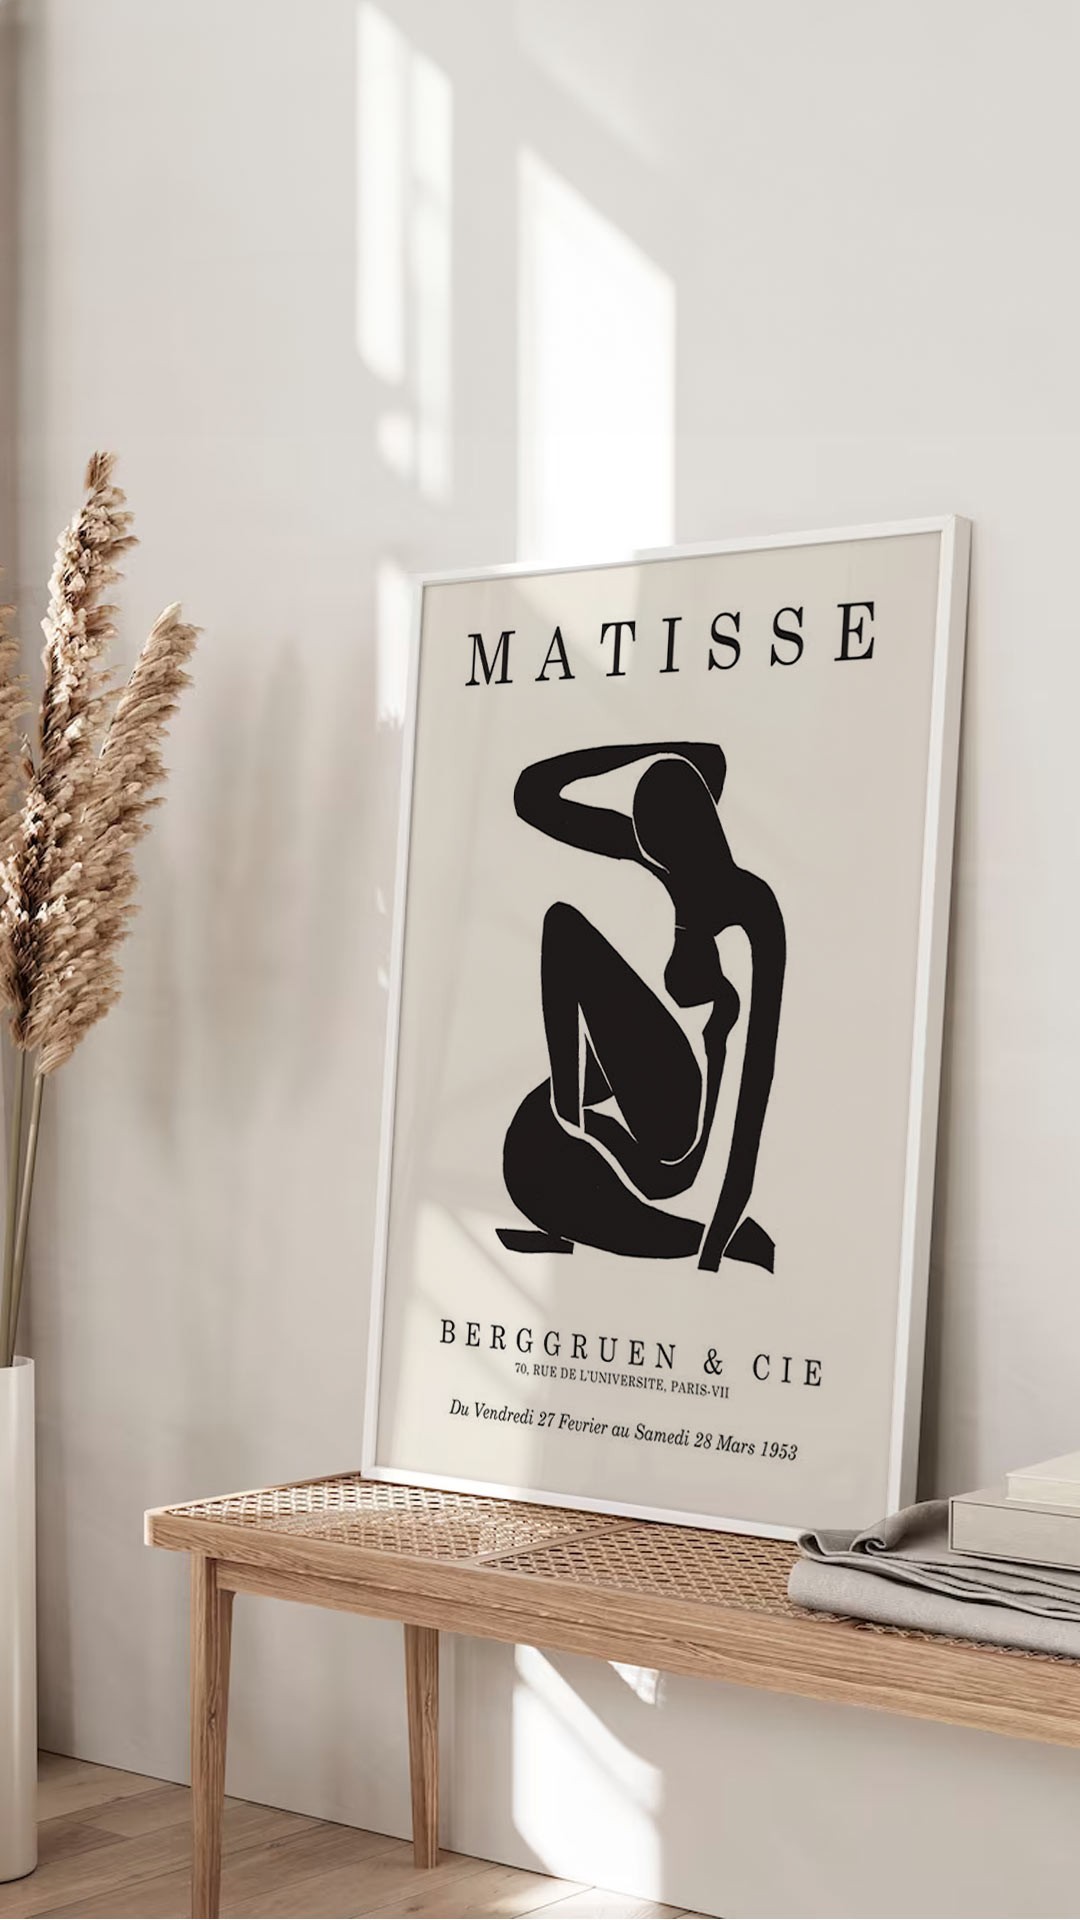 Αφίσες-Poster με έργα του Matisse